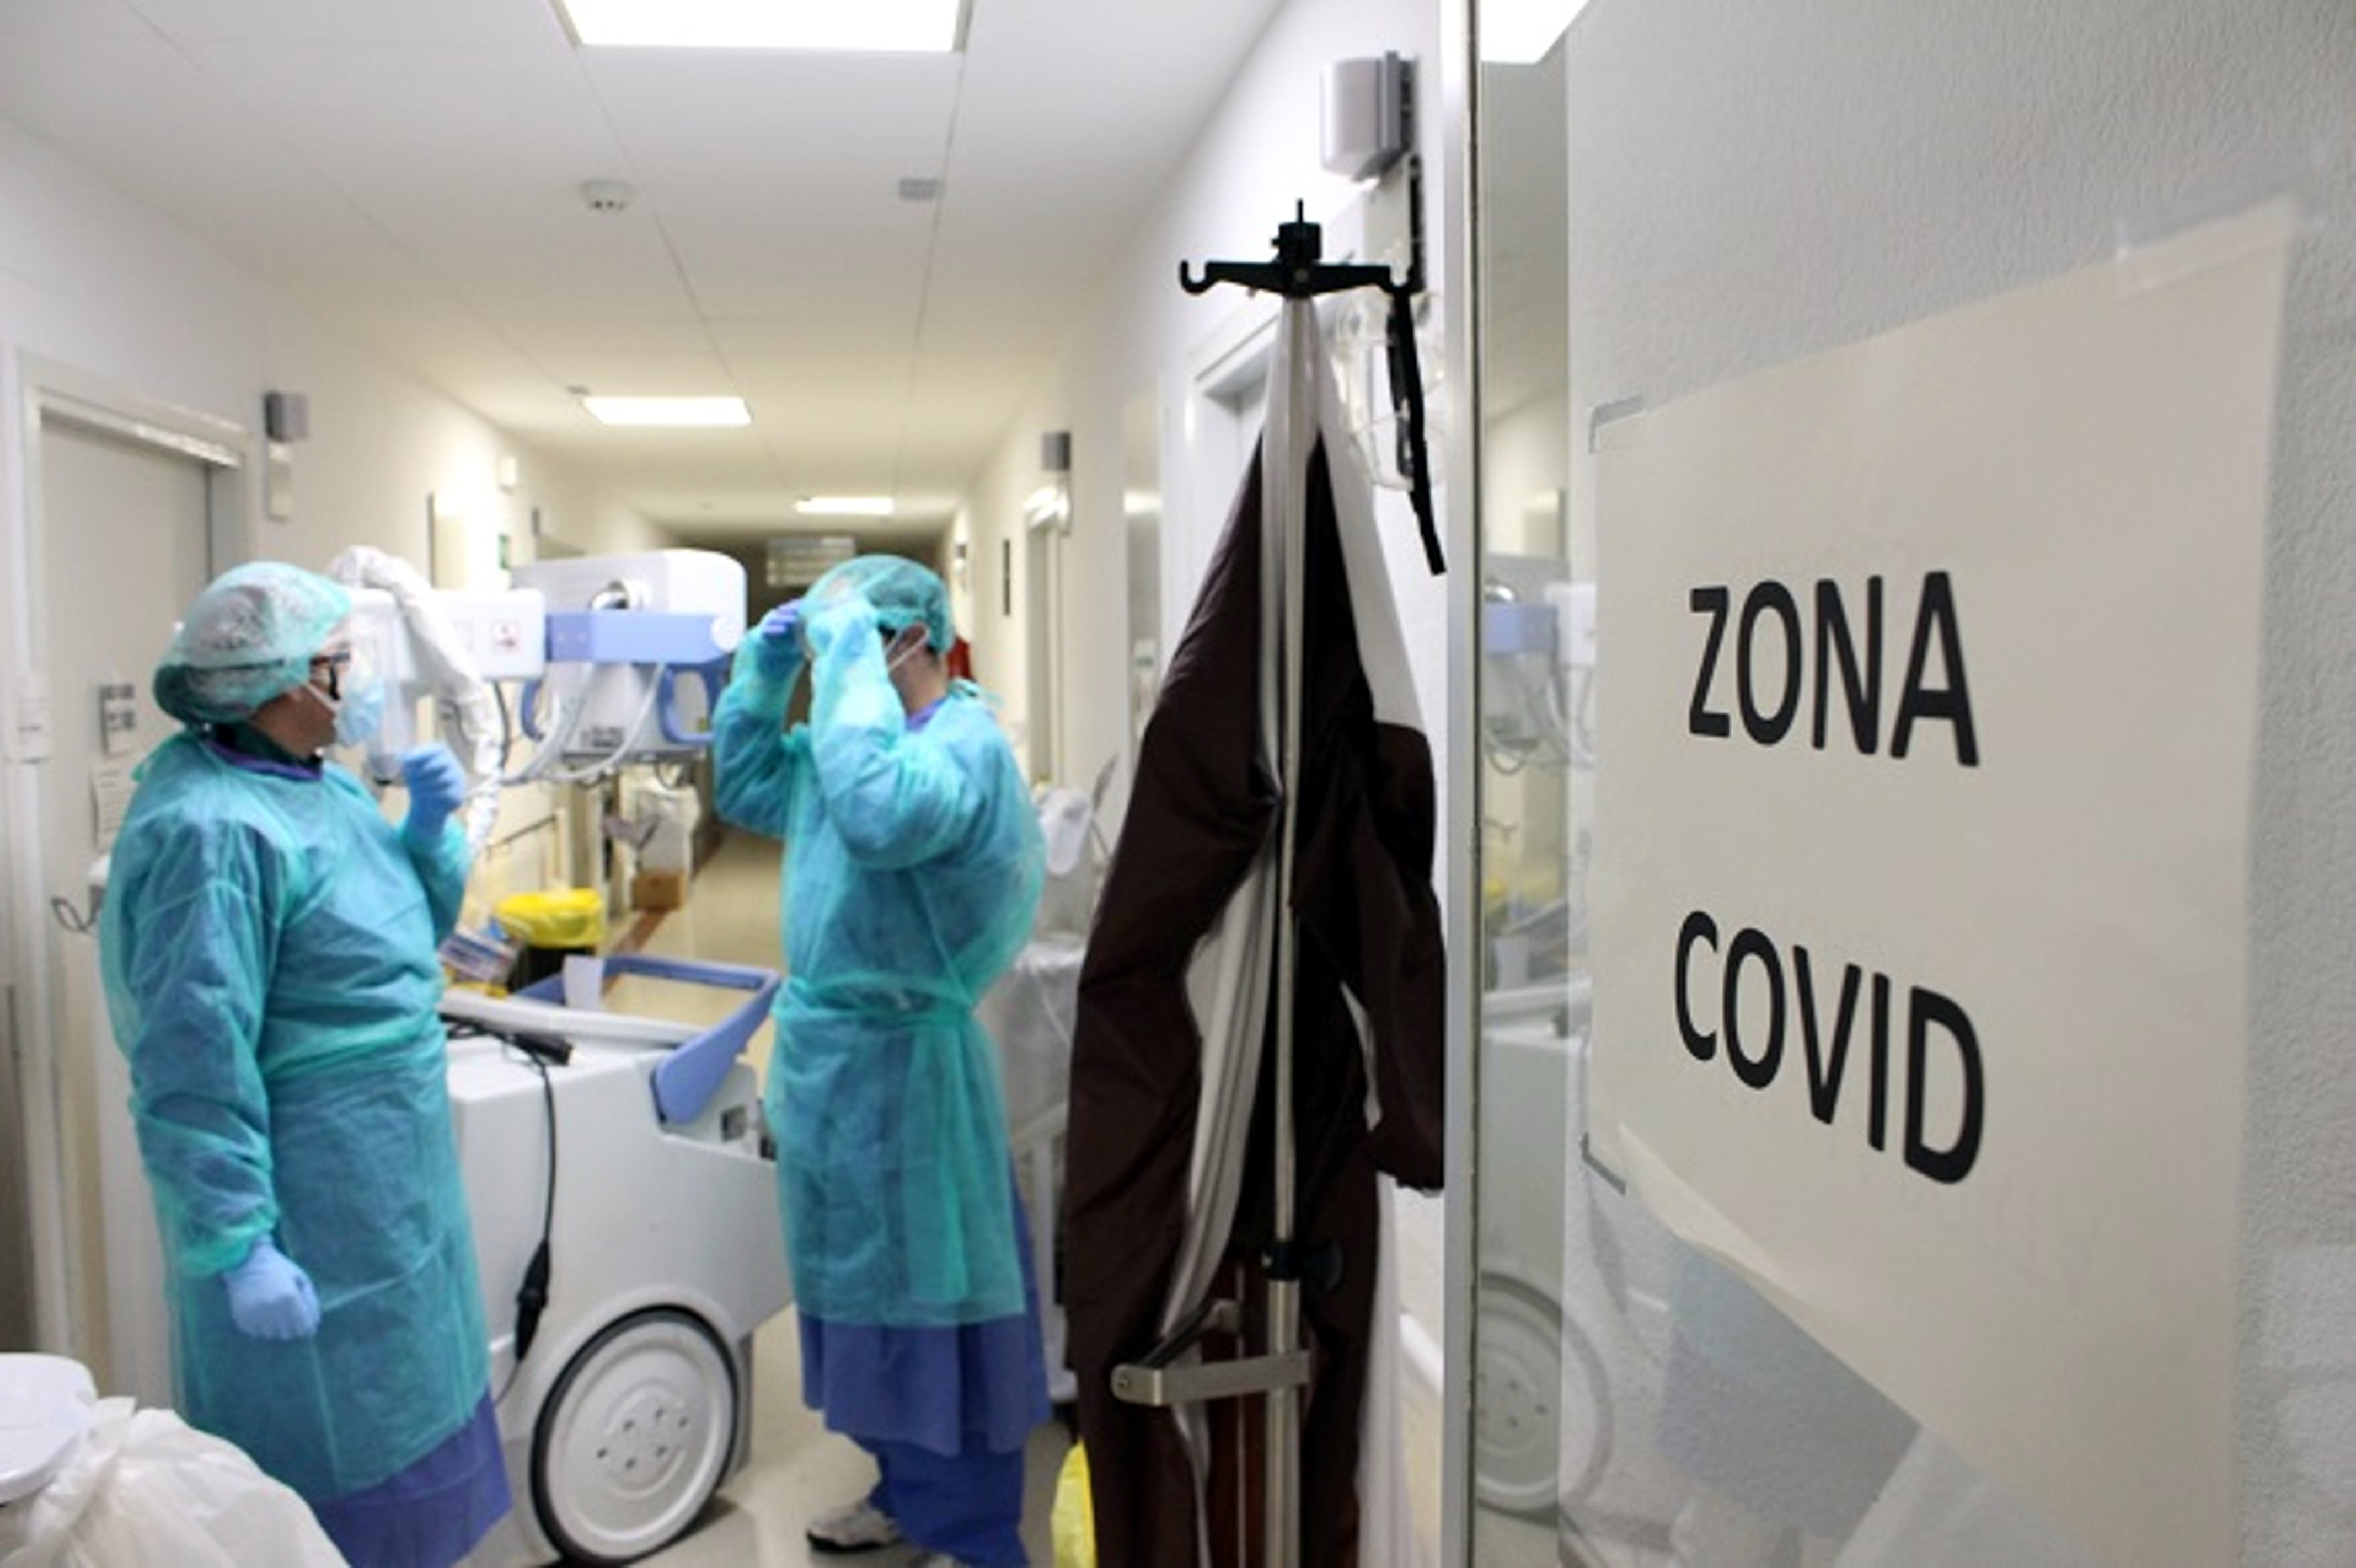 Sigue bajando el número de muertos por coronavirus en España: 87